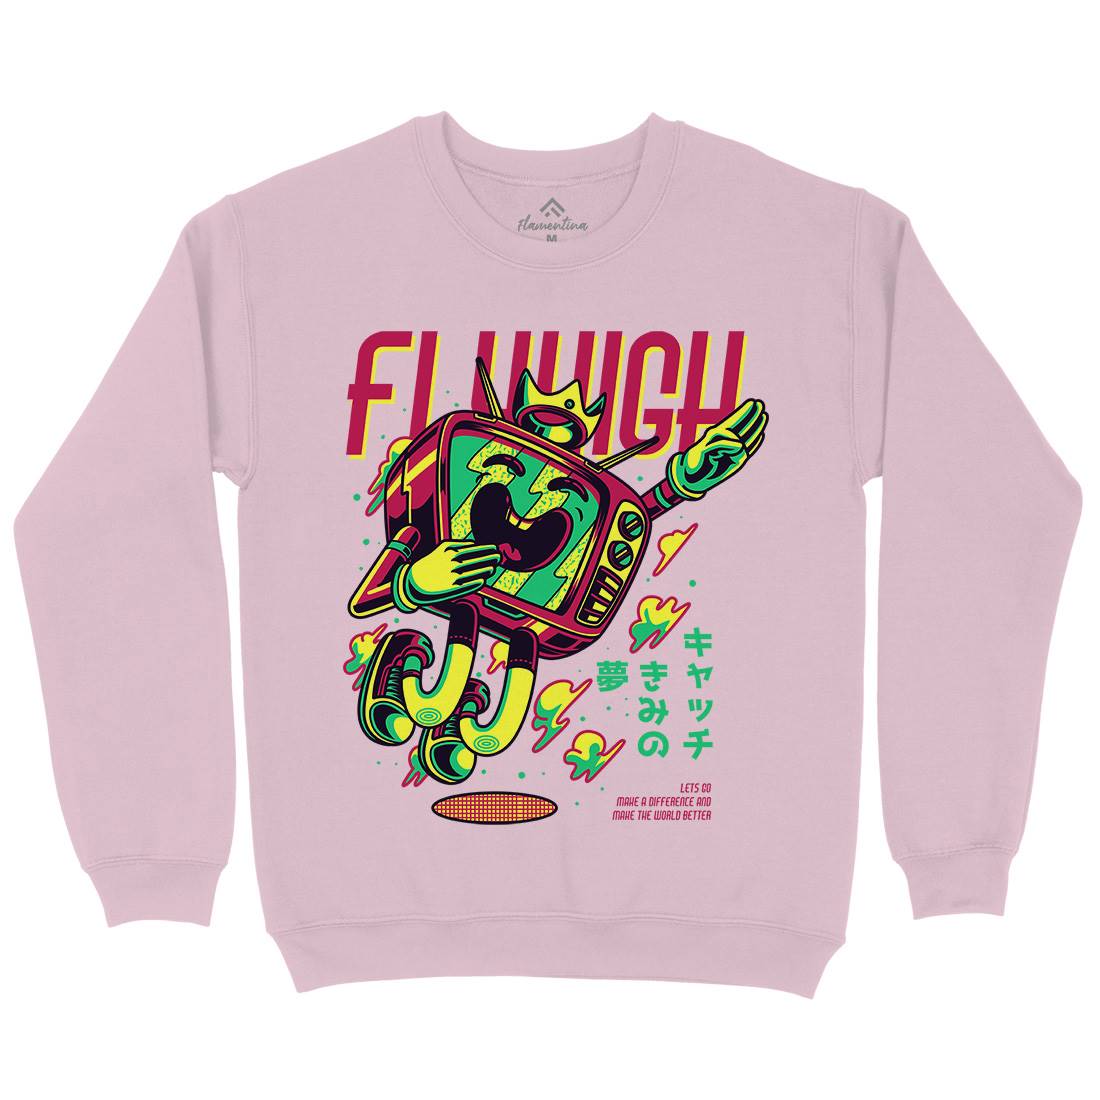 Fly High Kids Crew Neck Sweatshirt Media D778